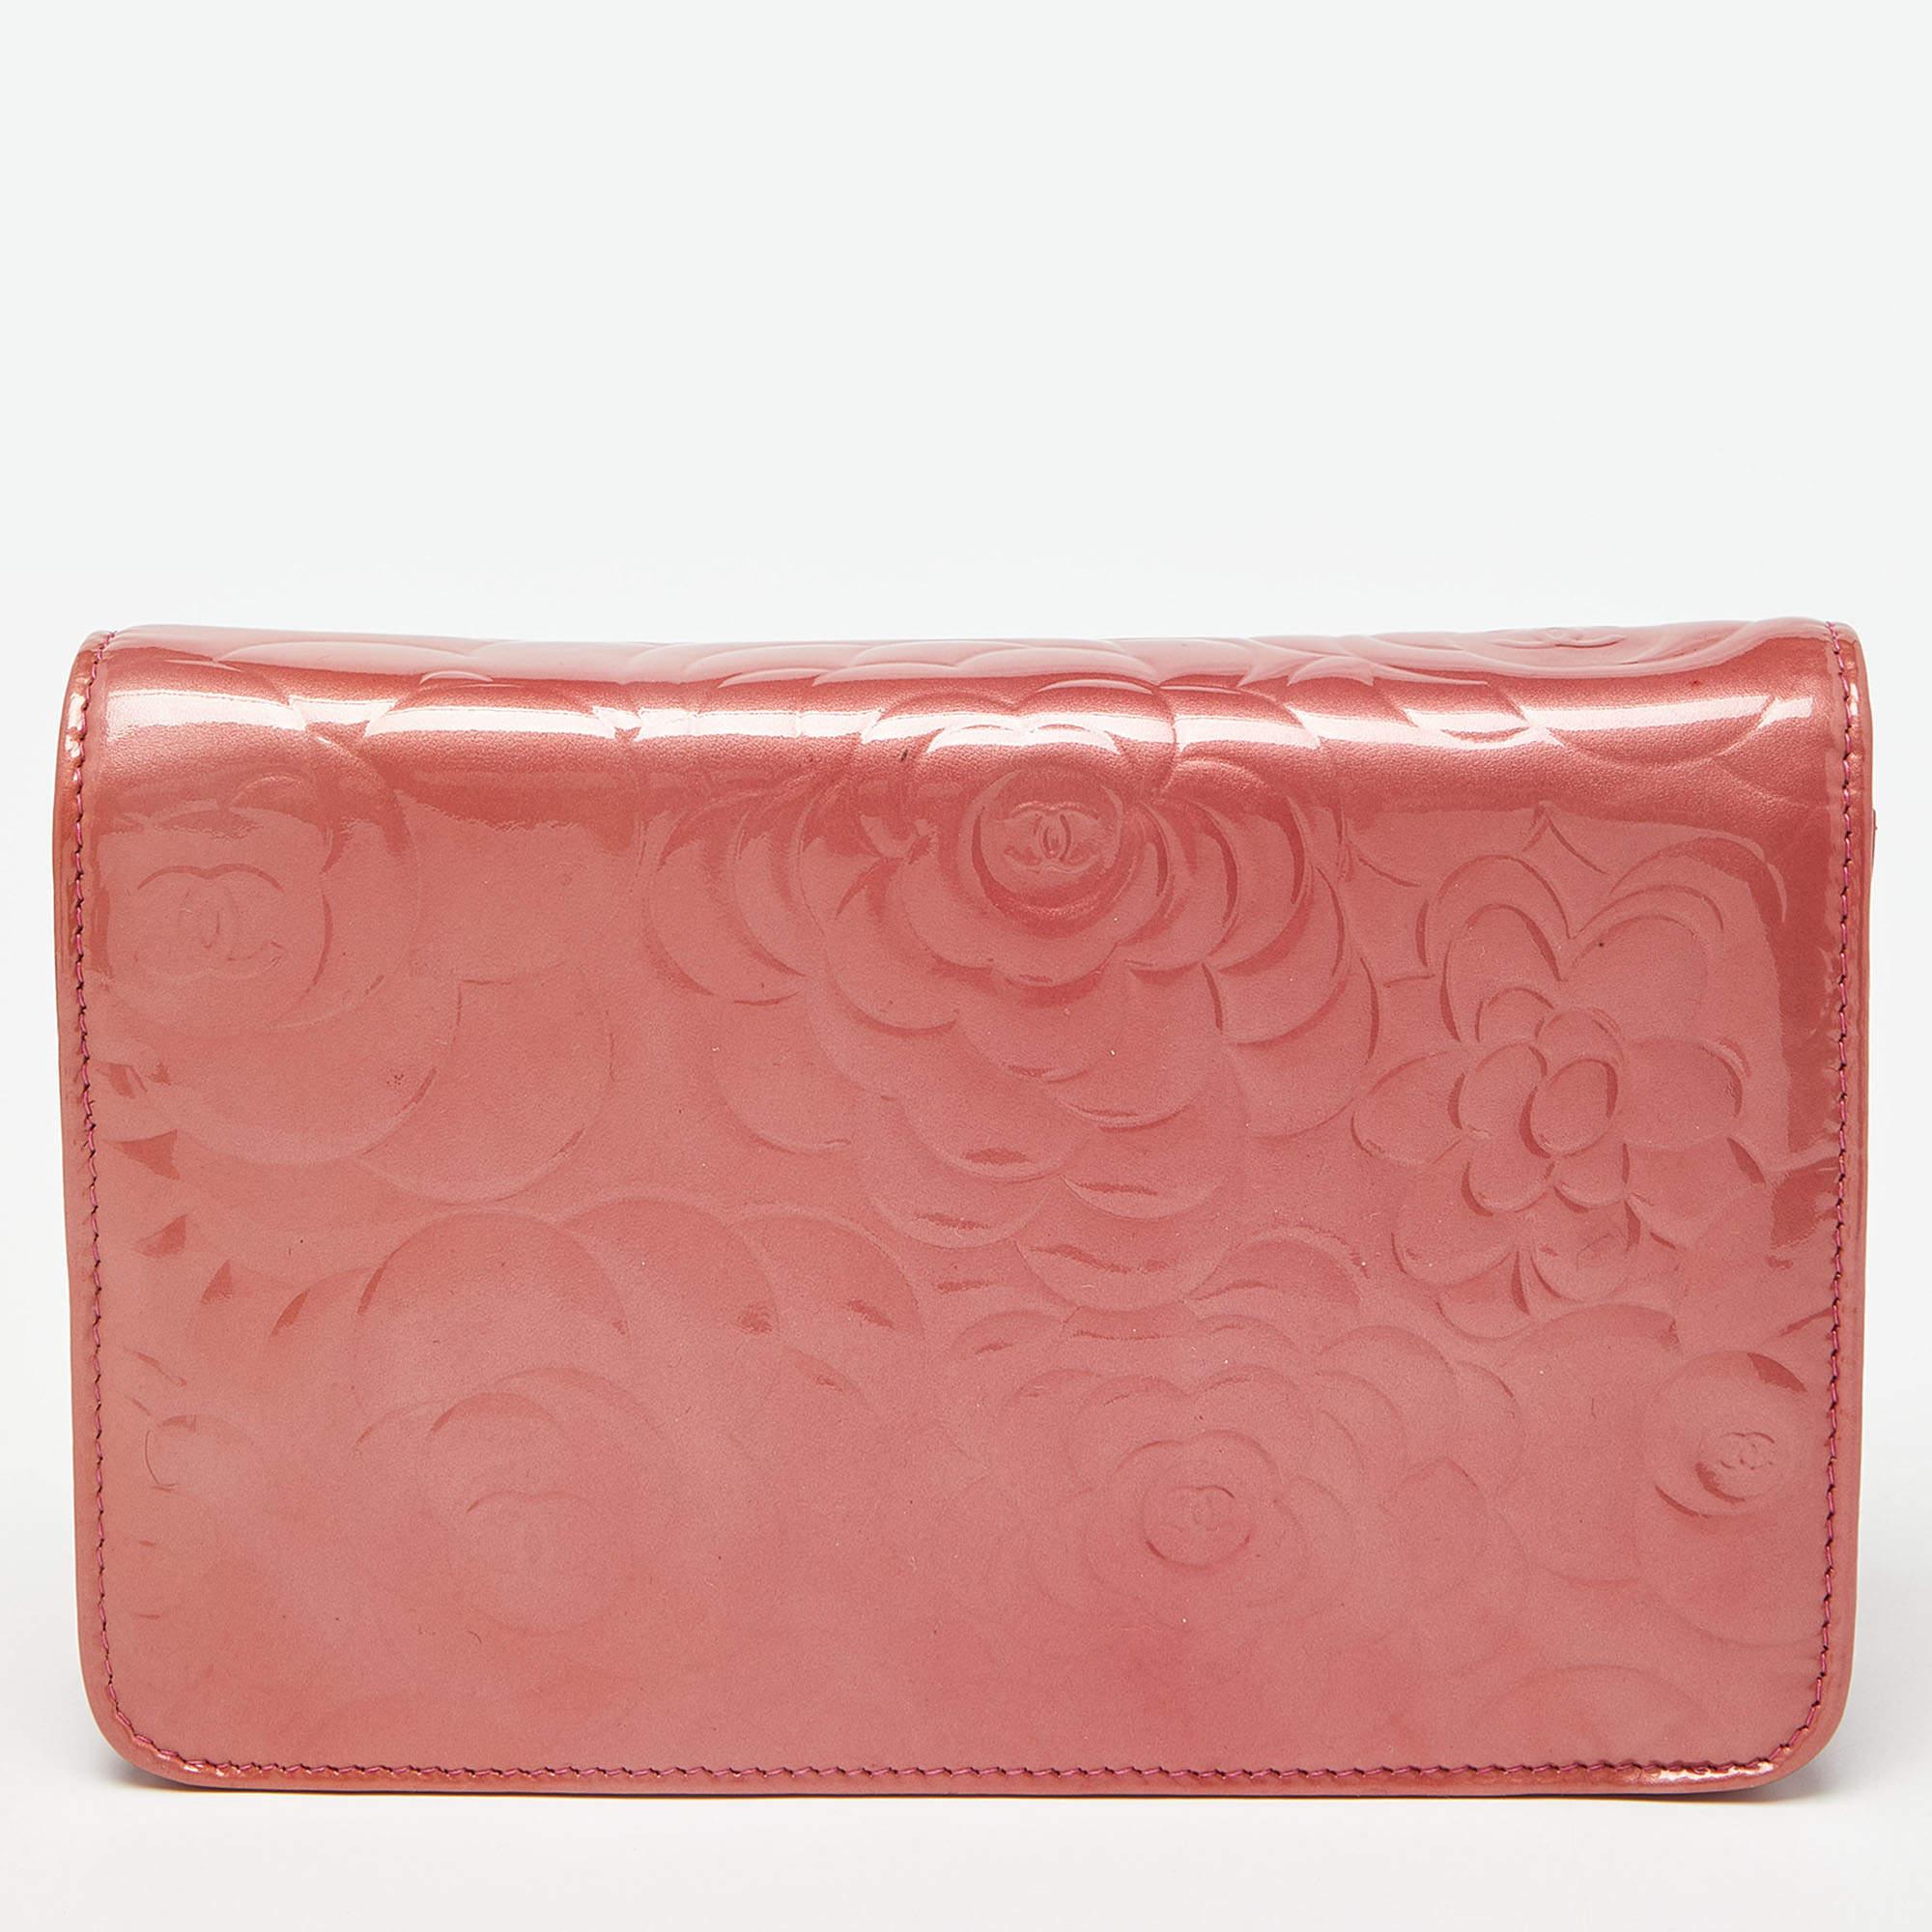 Mit dieser rosafarbenen Chanel Geldbörse an der Kette können Sie sich auf Qualität und Stil verlassen, die nie verblassen. Sie ist aus Lack- und Leder genäht, und das Innere ist wie eine Brieftasche gestaltet und bietet Platz für Karten, Bargeld und